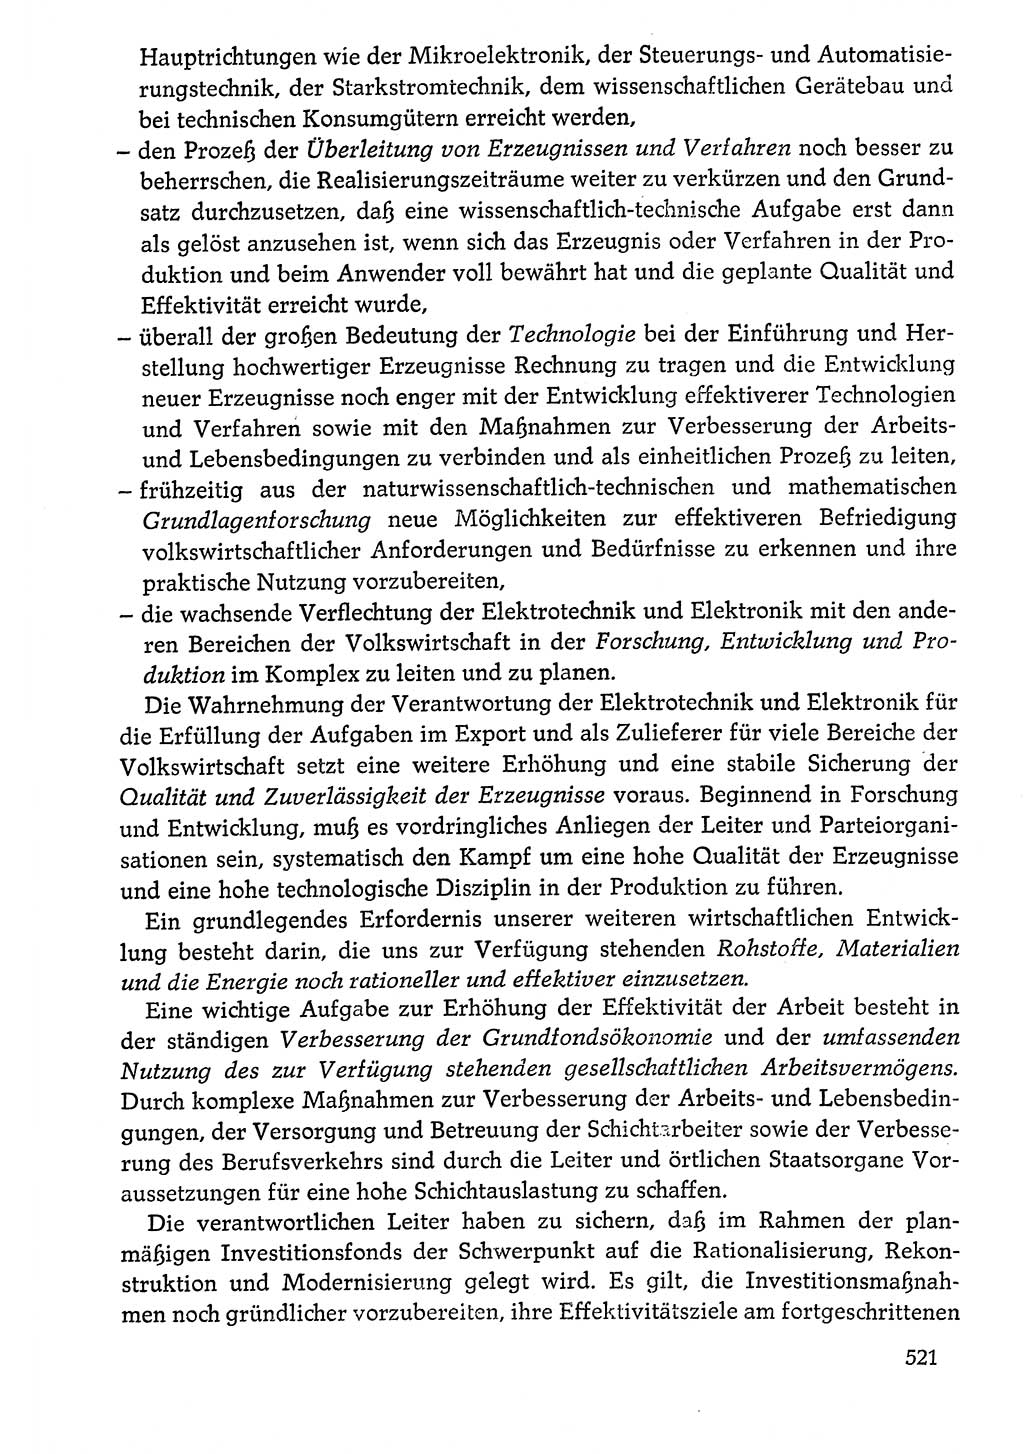 Dokumente der Sozialistischen Einheitspartei Deutschlands (SED) [Deutsche Demokratische Republik (DDR)] 1976-1977, Seite 521 (Dok. SED DDR 1976-1977, S. 521)